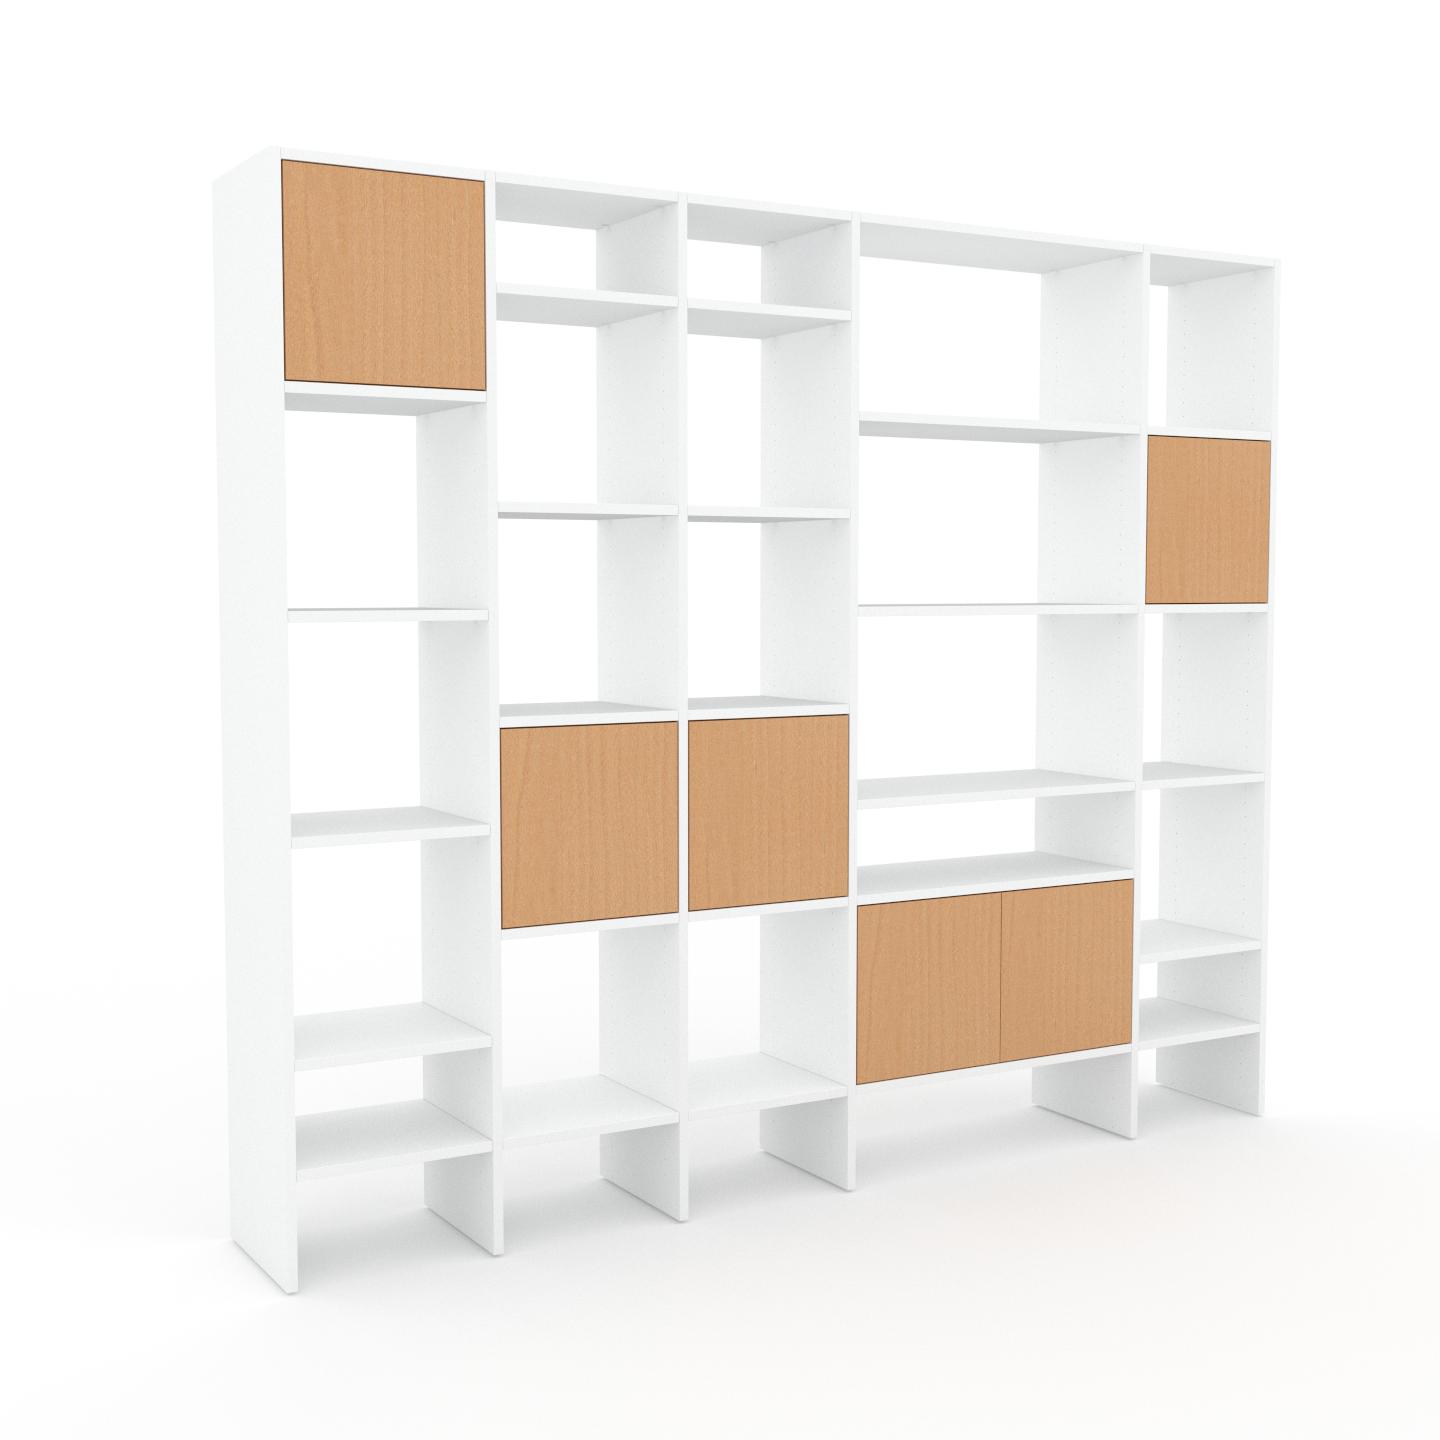 MYCS Bibliotheksregal Buche - Individuelles Regal für Bibliothek: Türen in Buche - 231 x 195 x 35 cm, konfigurierbar